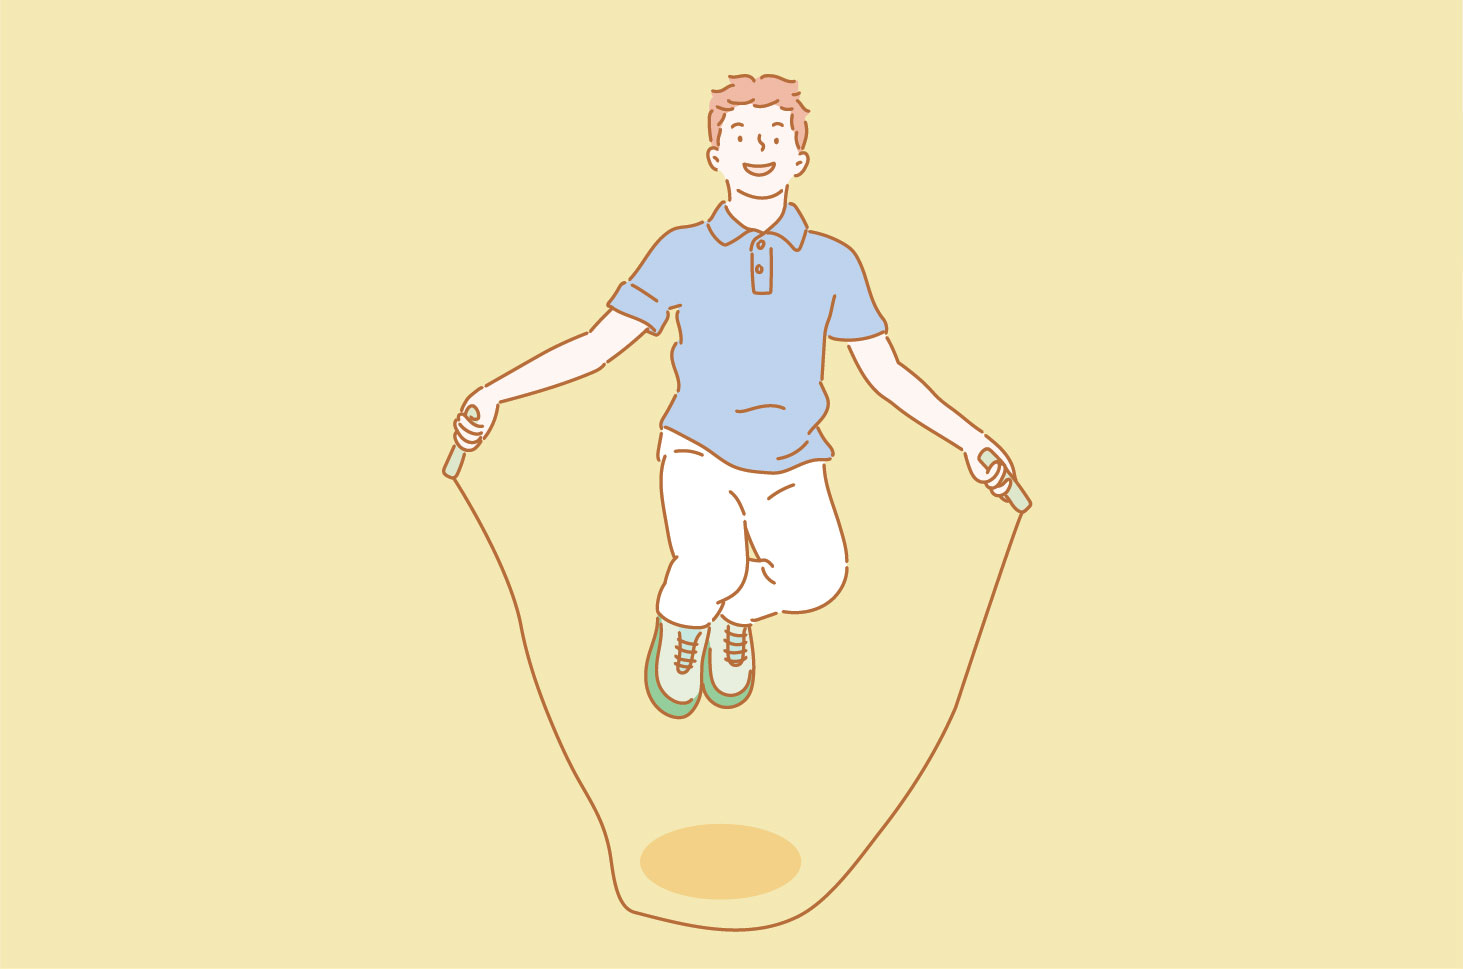 Apakah lompat tali bisa menurunkan berat badan